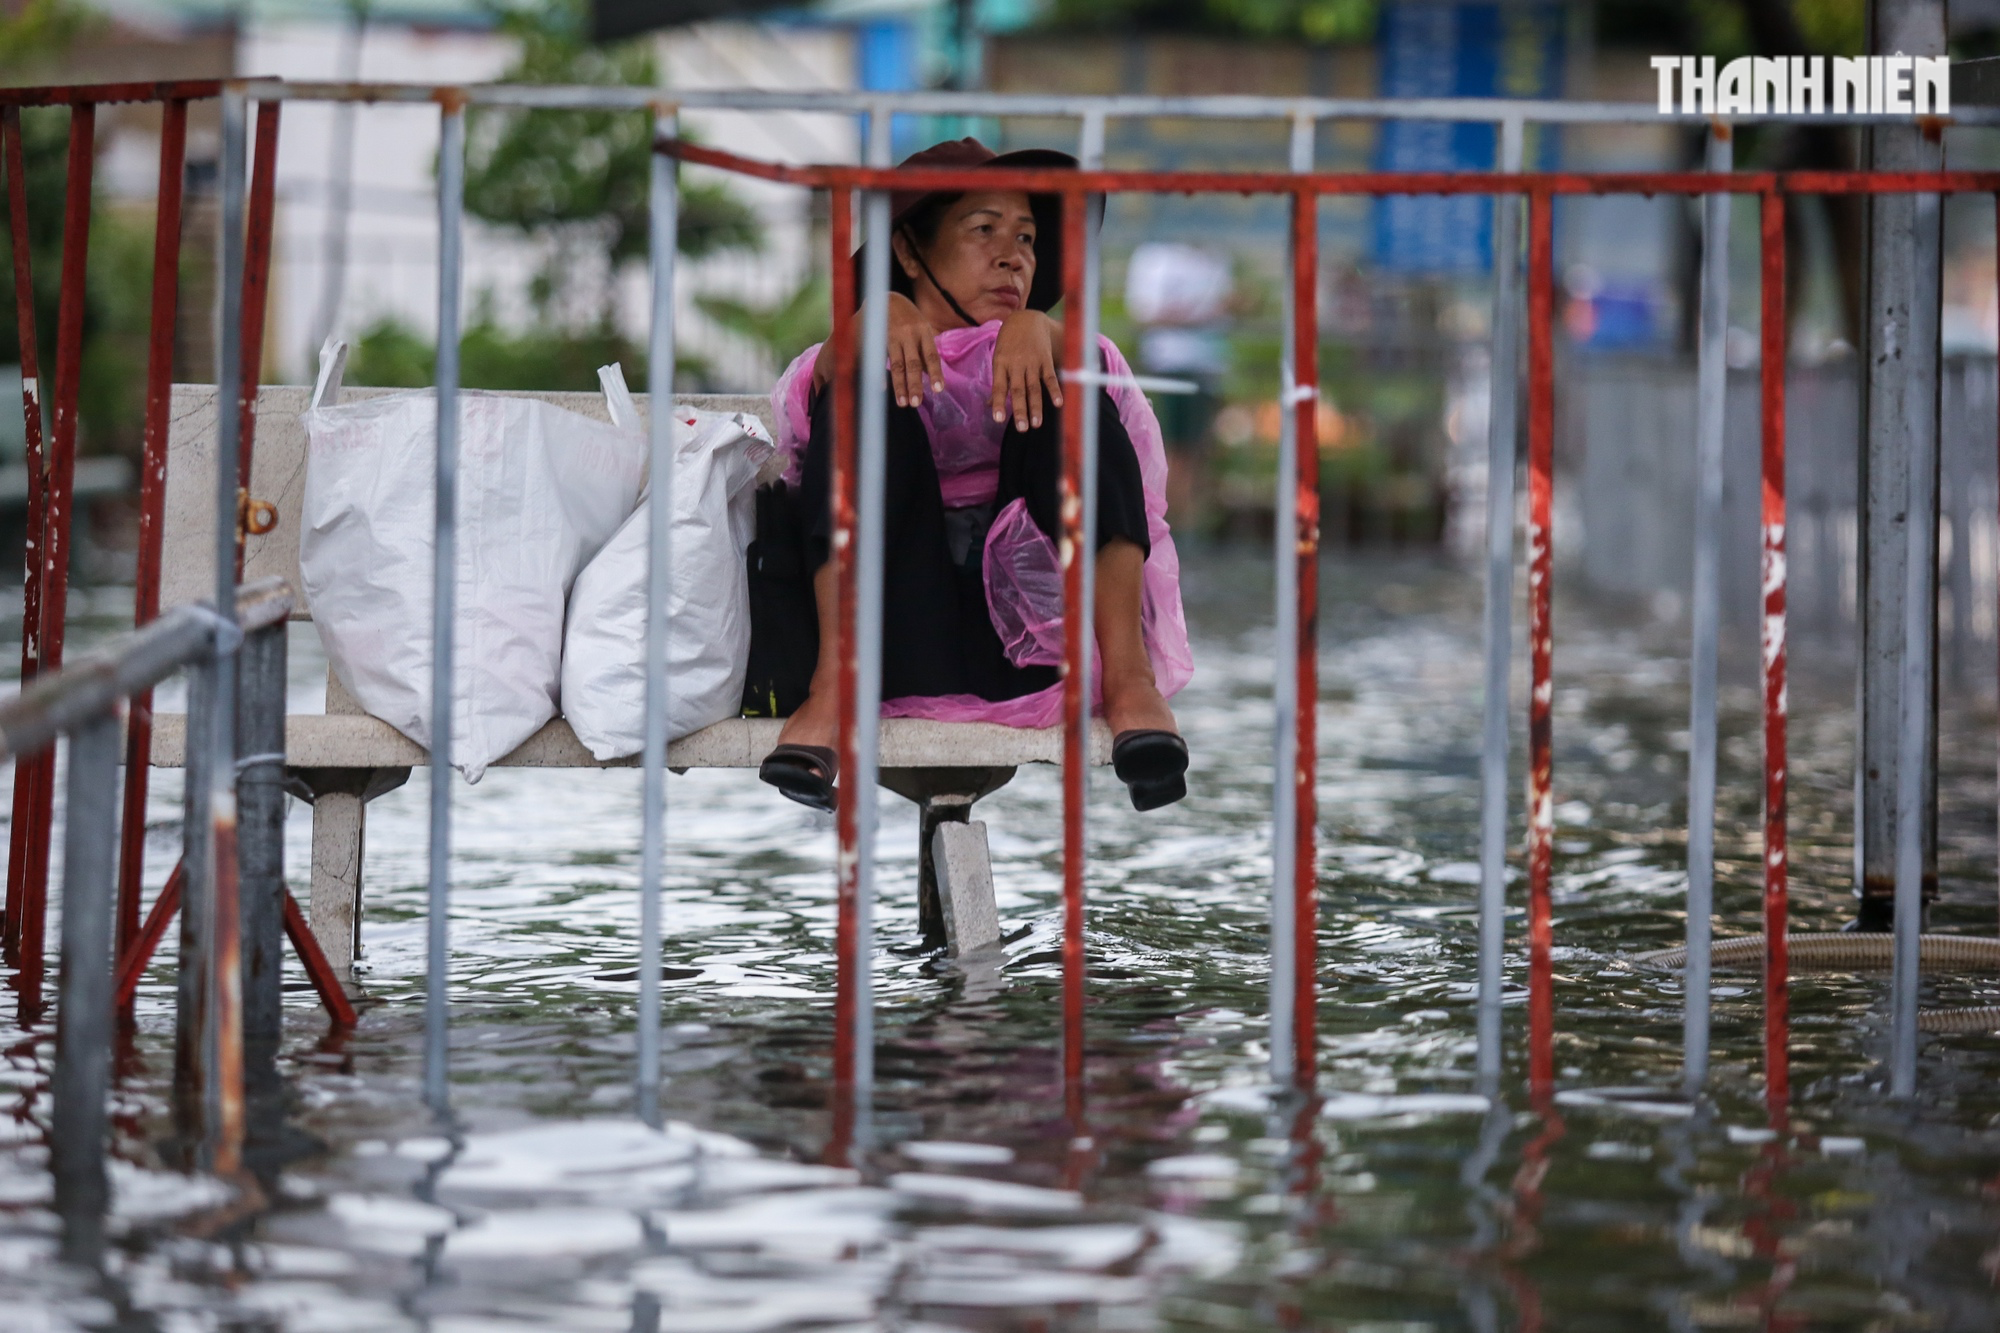 Đường TP.HCM ngập lênh láng sau mưa, người dân vất vả lội nước về nhà - Ảnh 5.